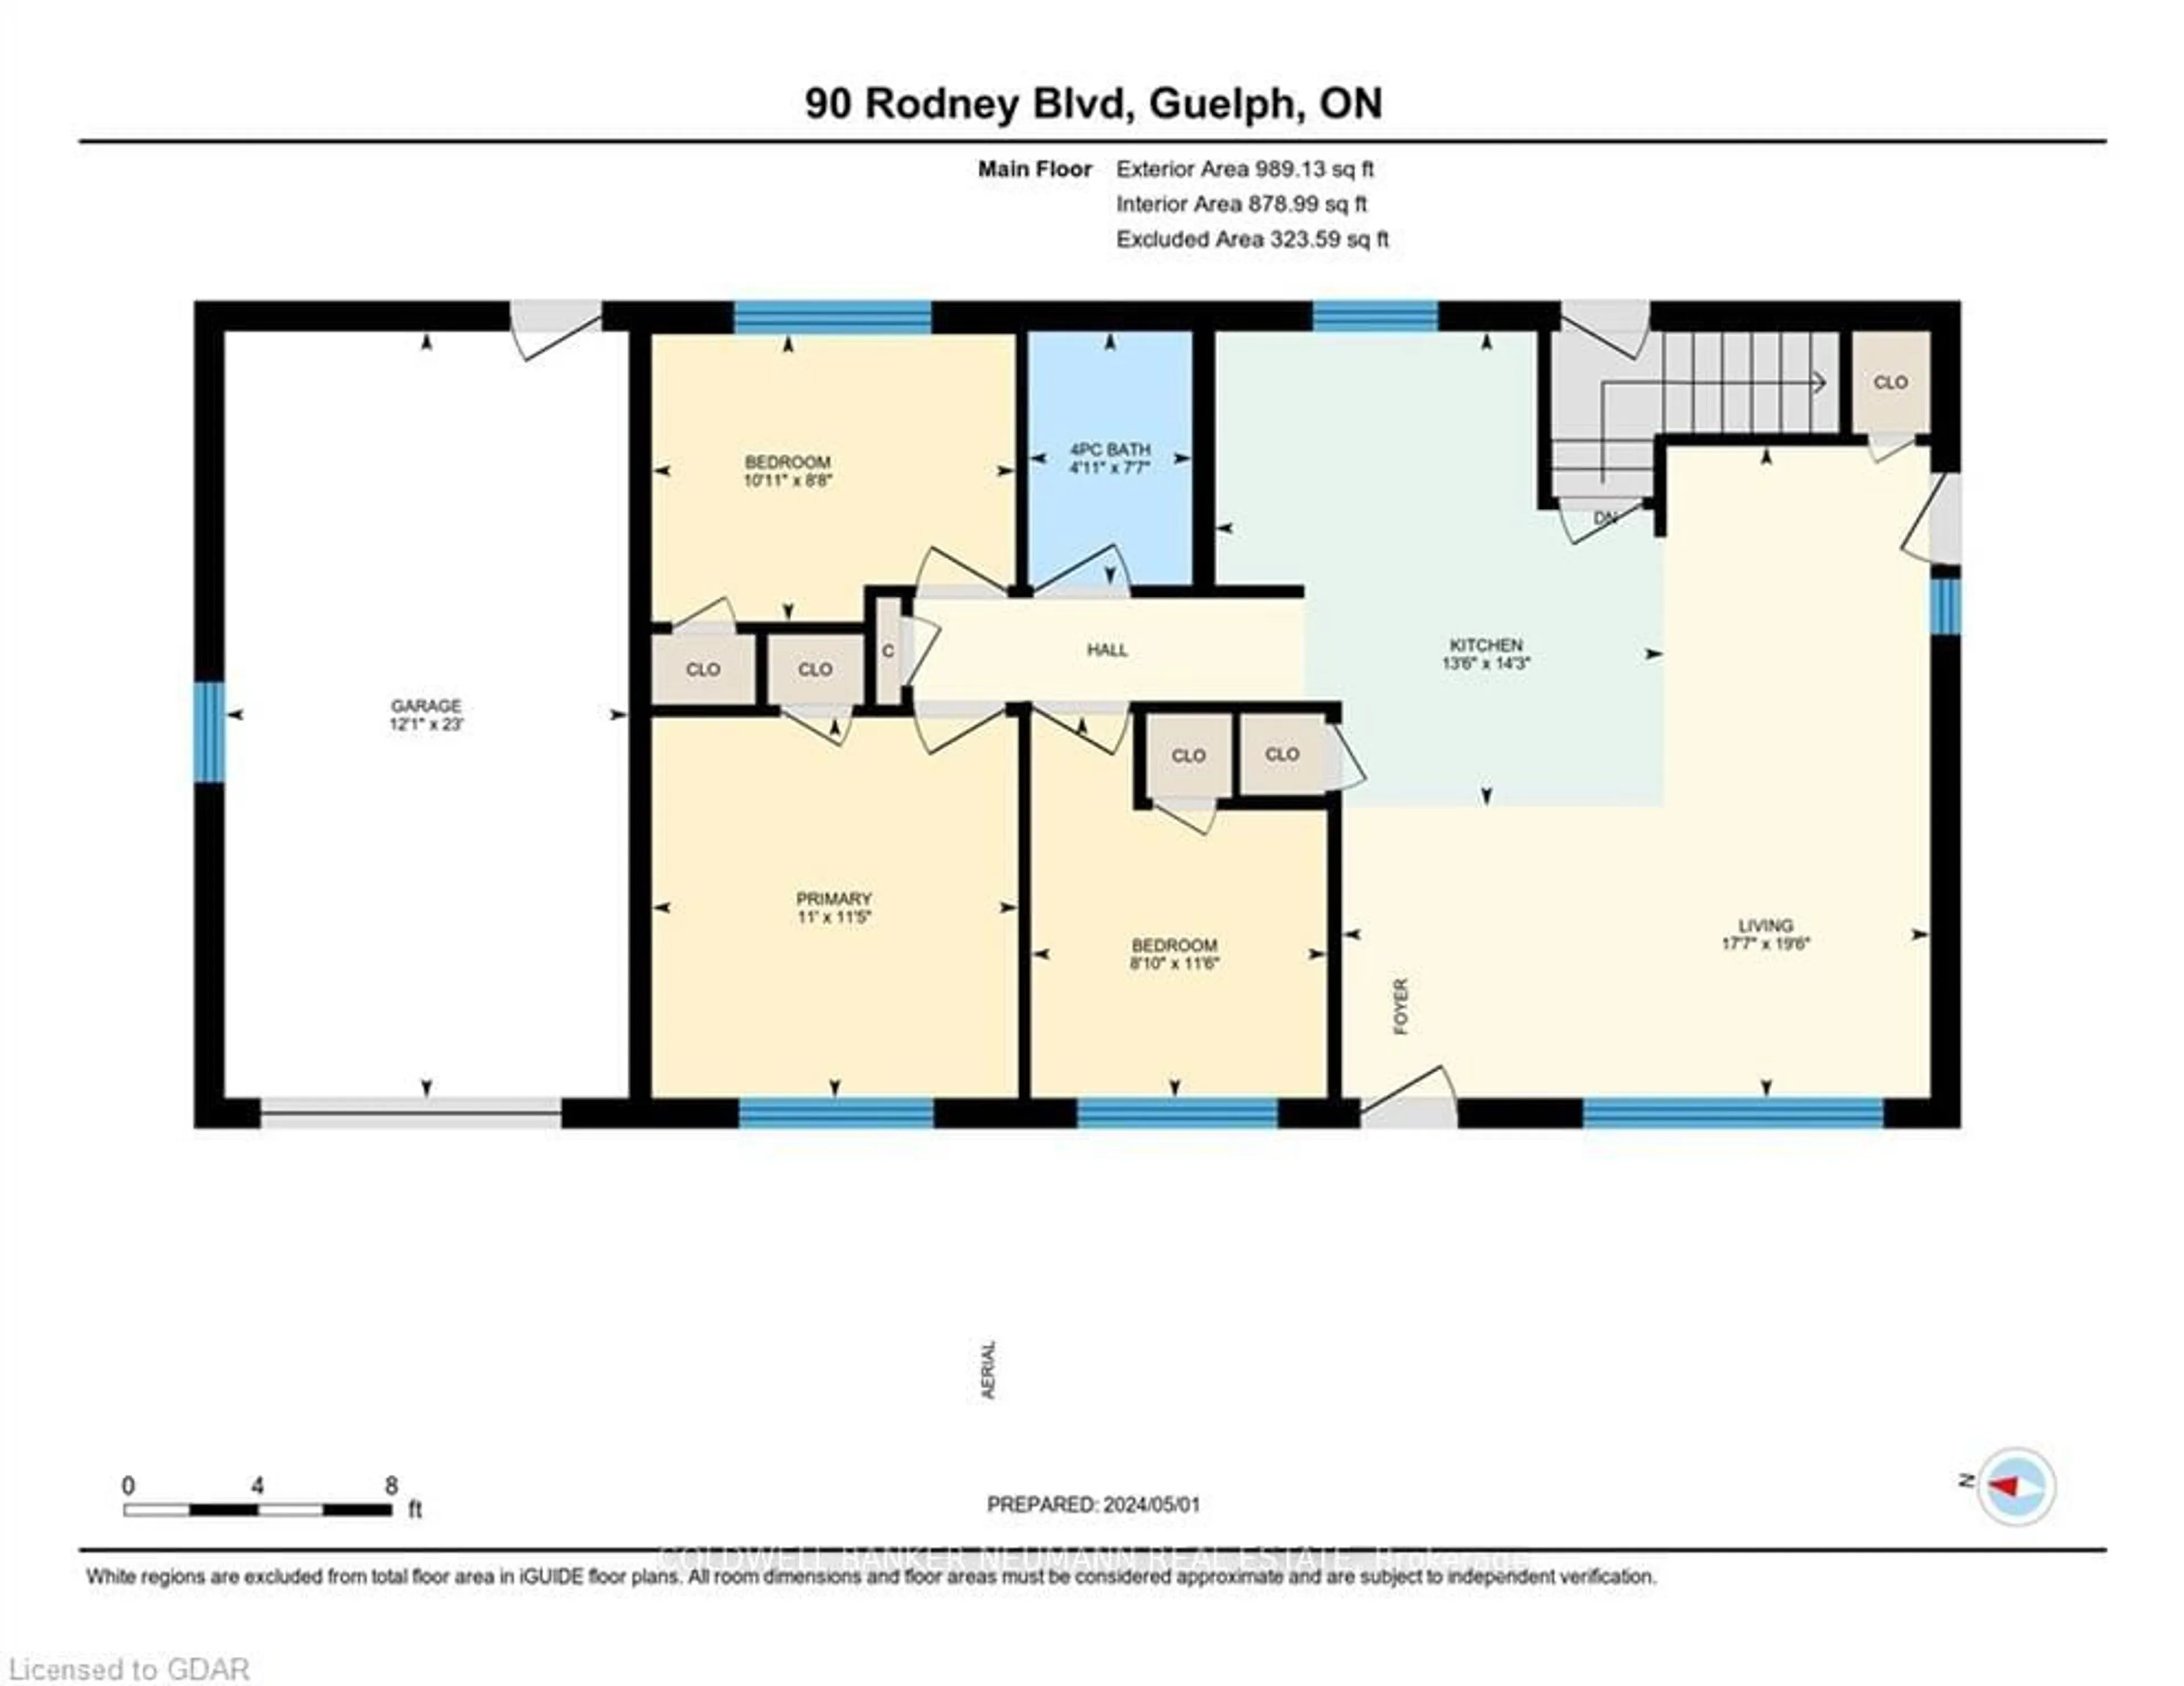 Floor plan for 90 Rodney Blvd, Guelph Ontario N1G 2H3